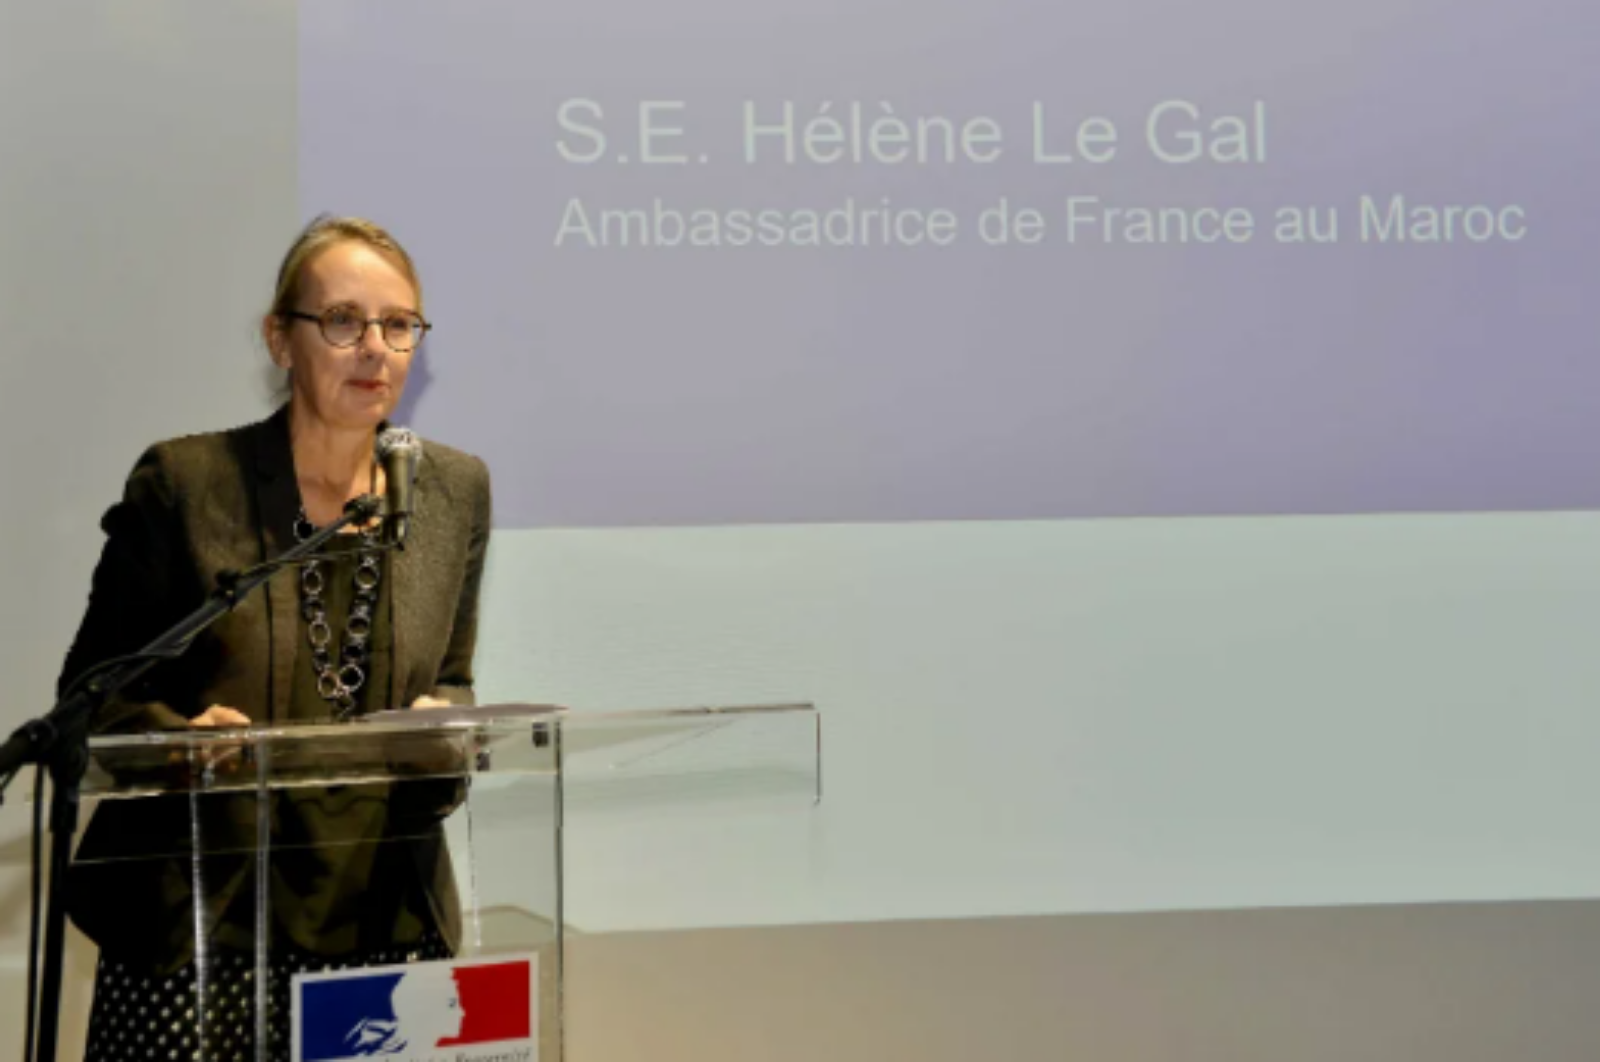 سفيرة فرنسا بالرباط ترجع سبب “جمود” تبادل زيارات مسؤولي البلدين إلى الجائحة